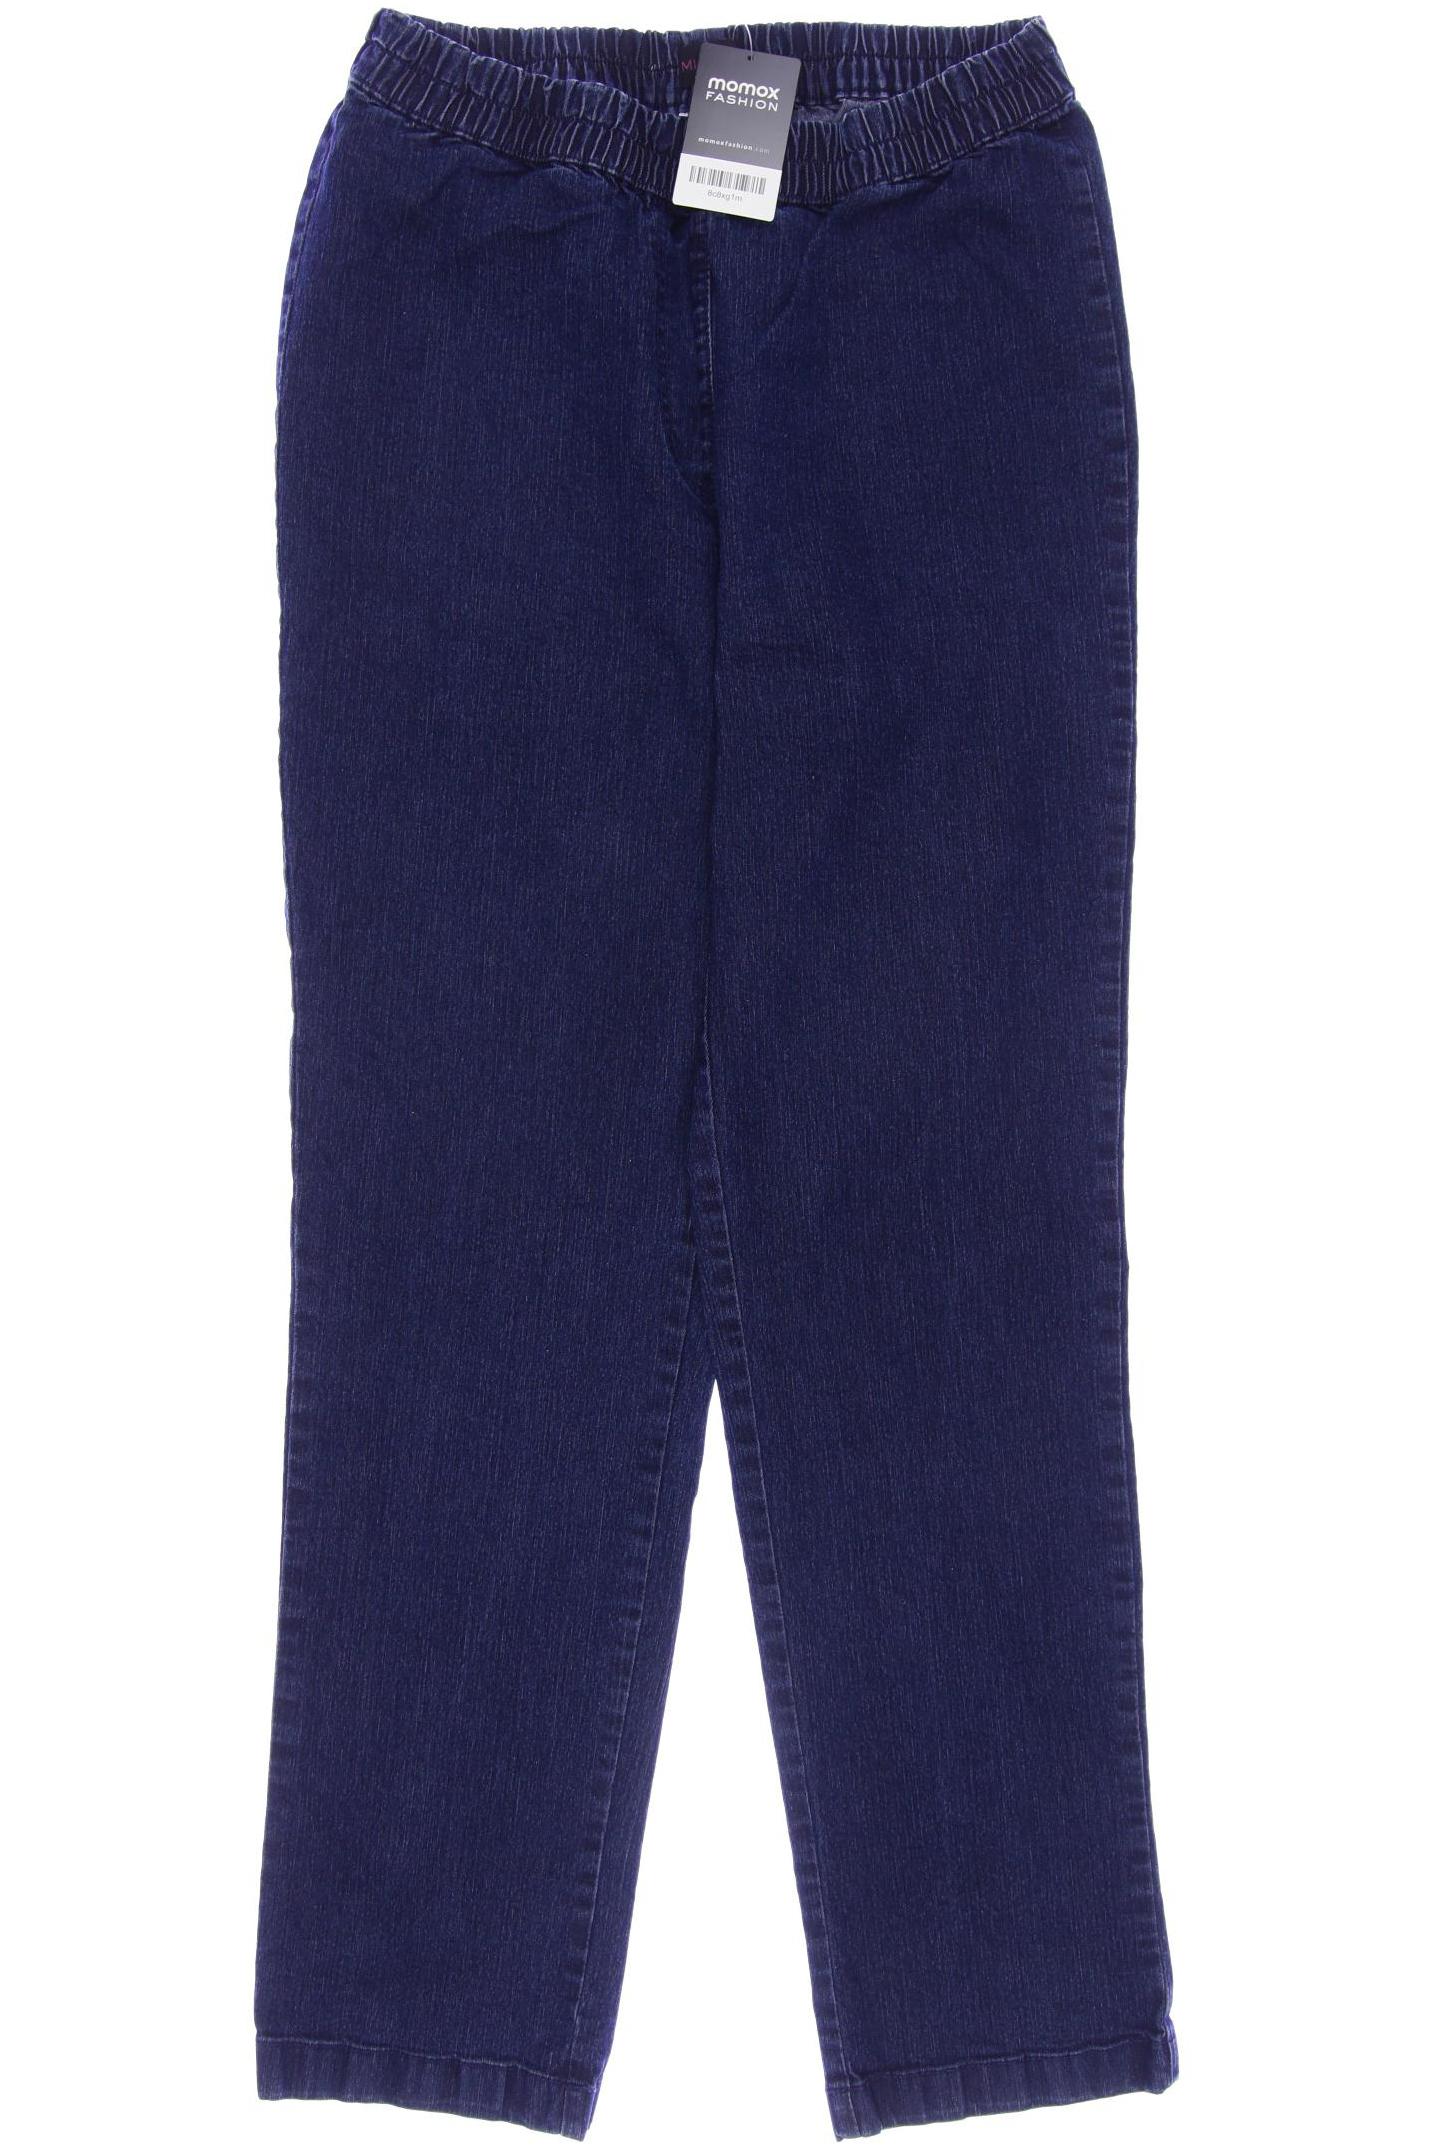 Miamoda Damen Jeans, marineblau, Gr. 42 von MIAMODA